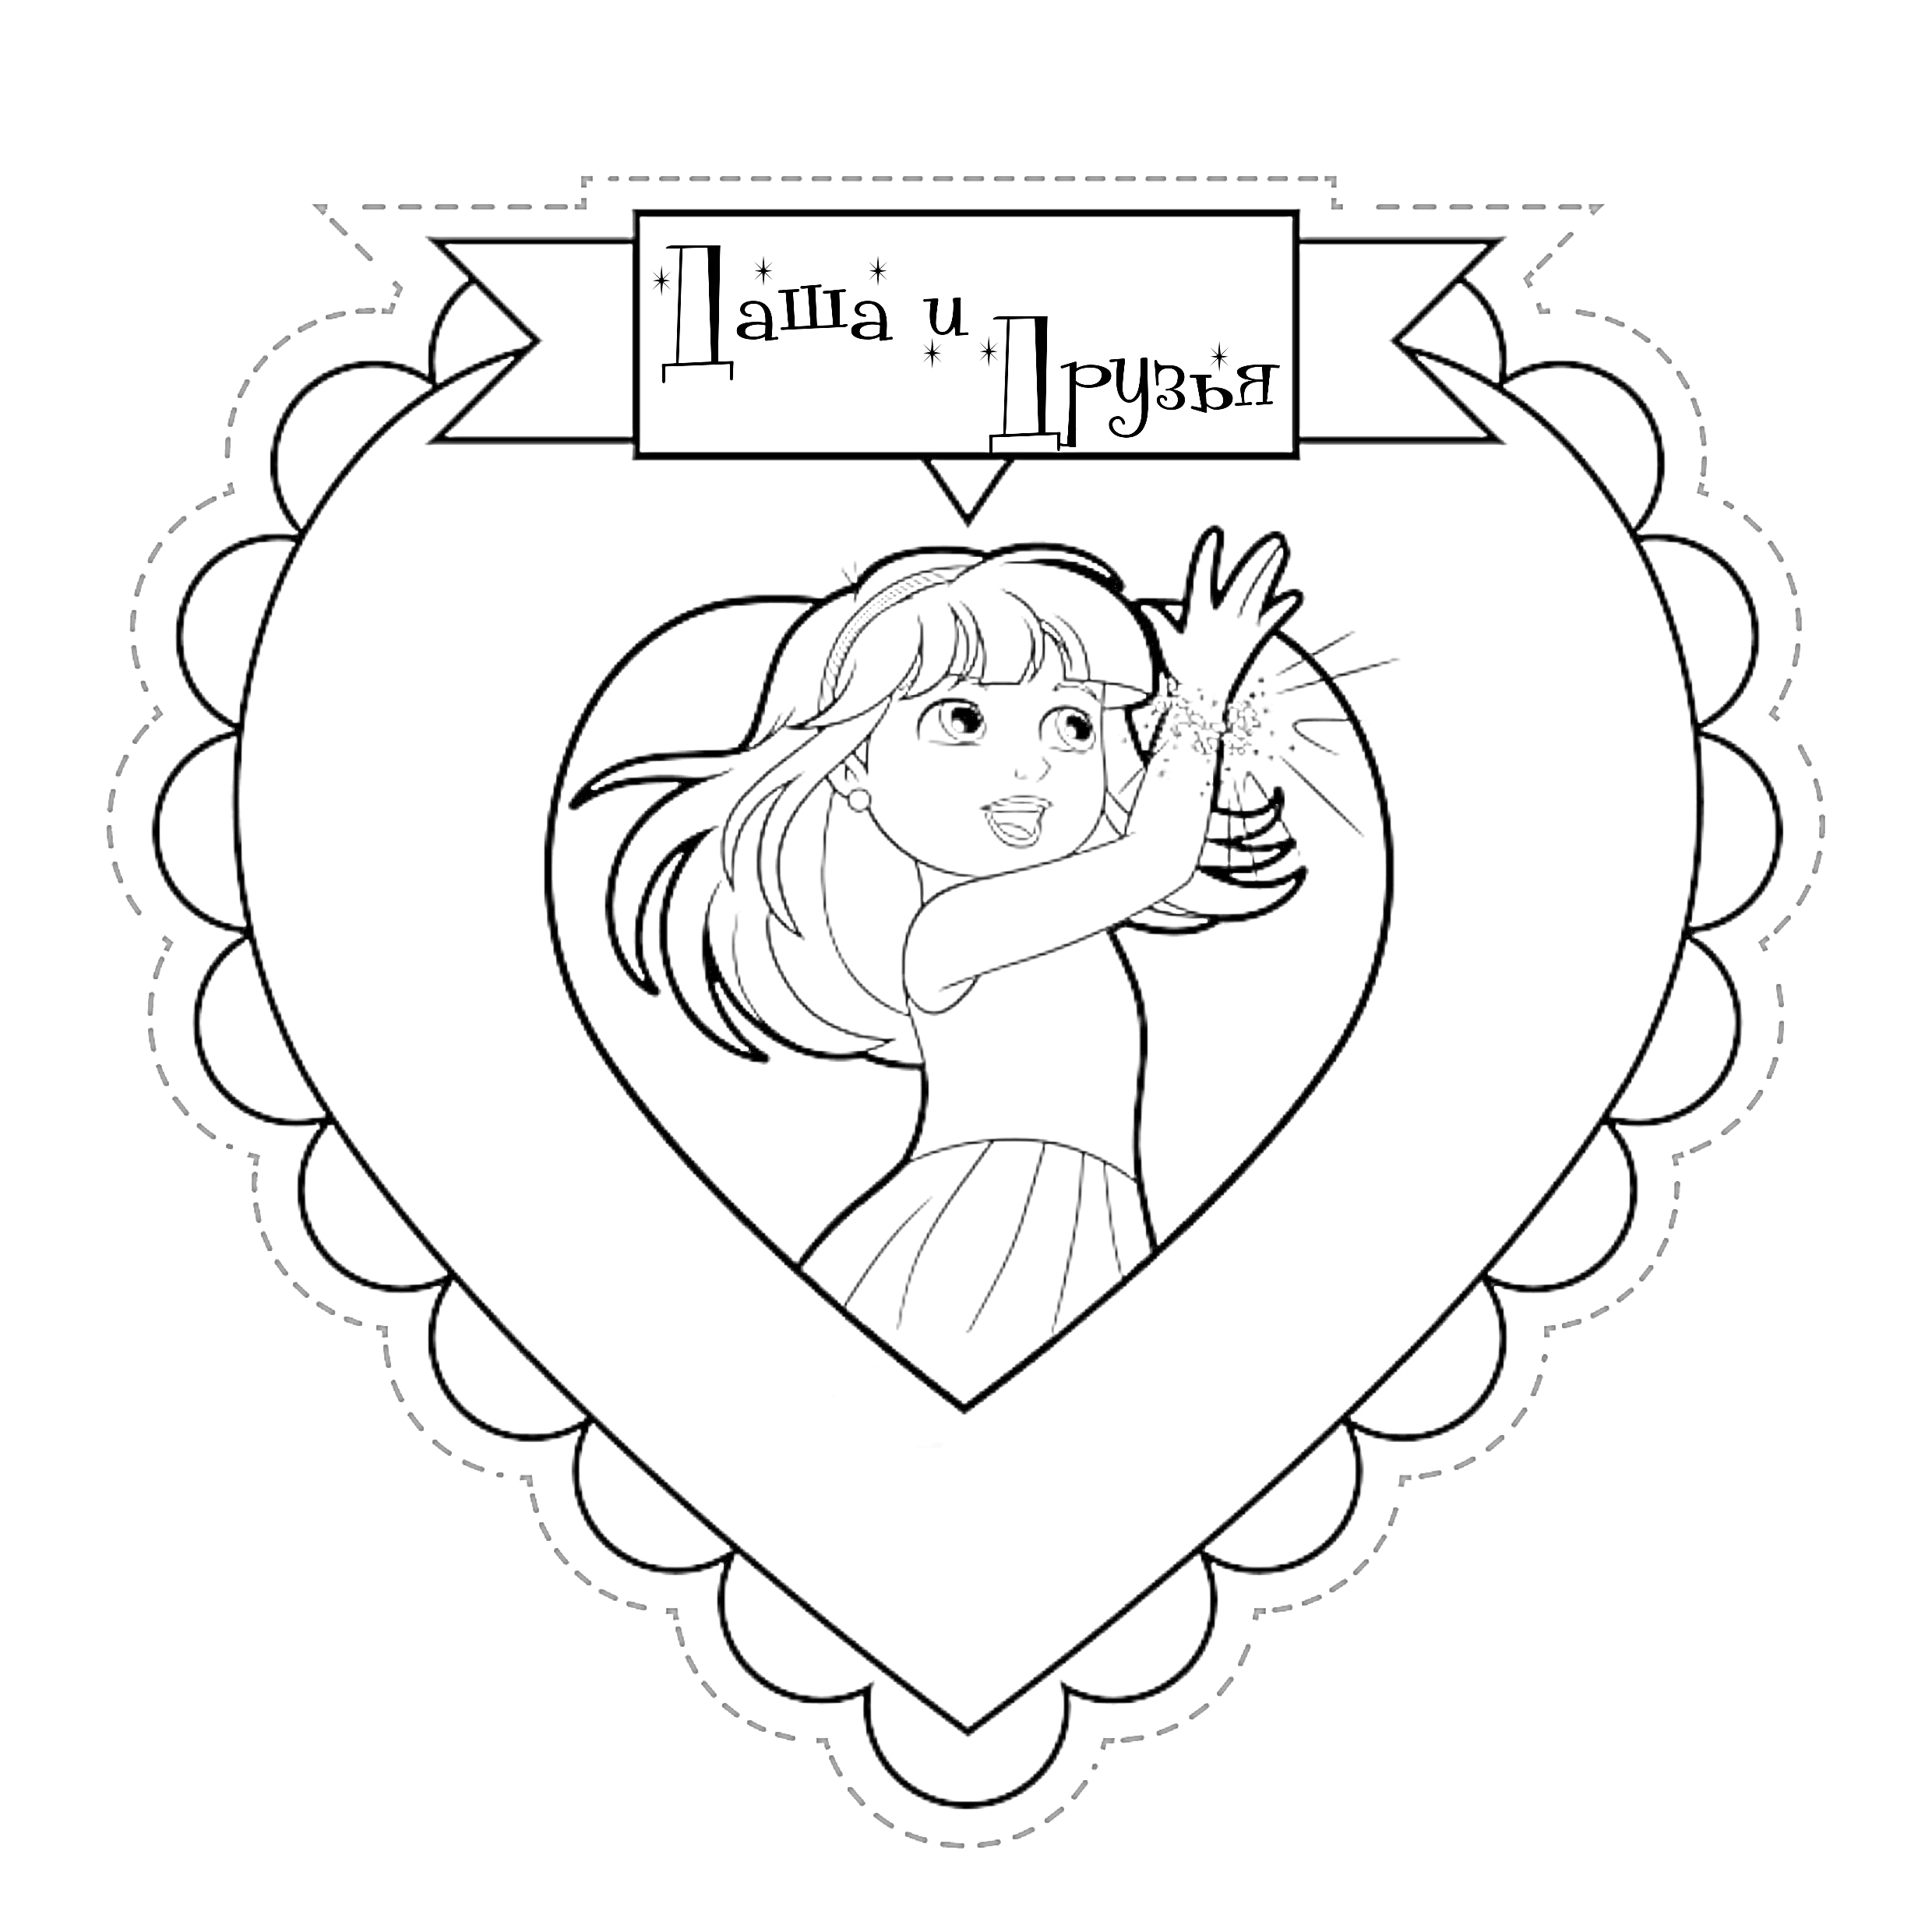 Раскраска Девочка с длинными волосами в платье машет рукой внутри сердечка с каймой и надписью 